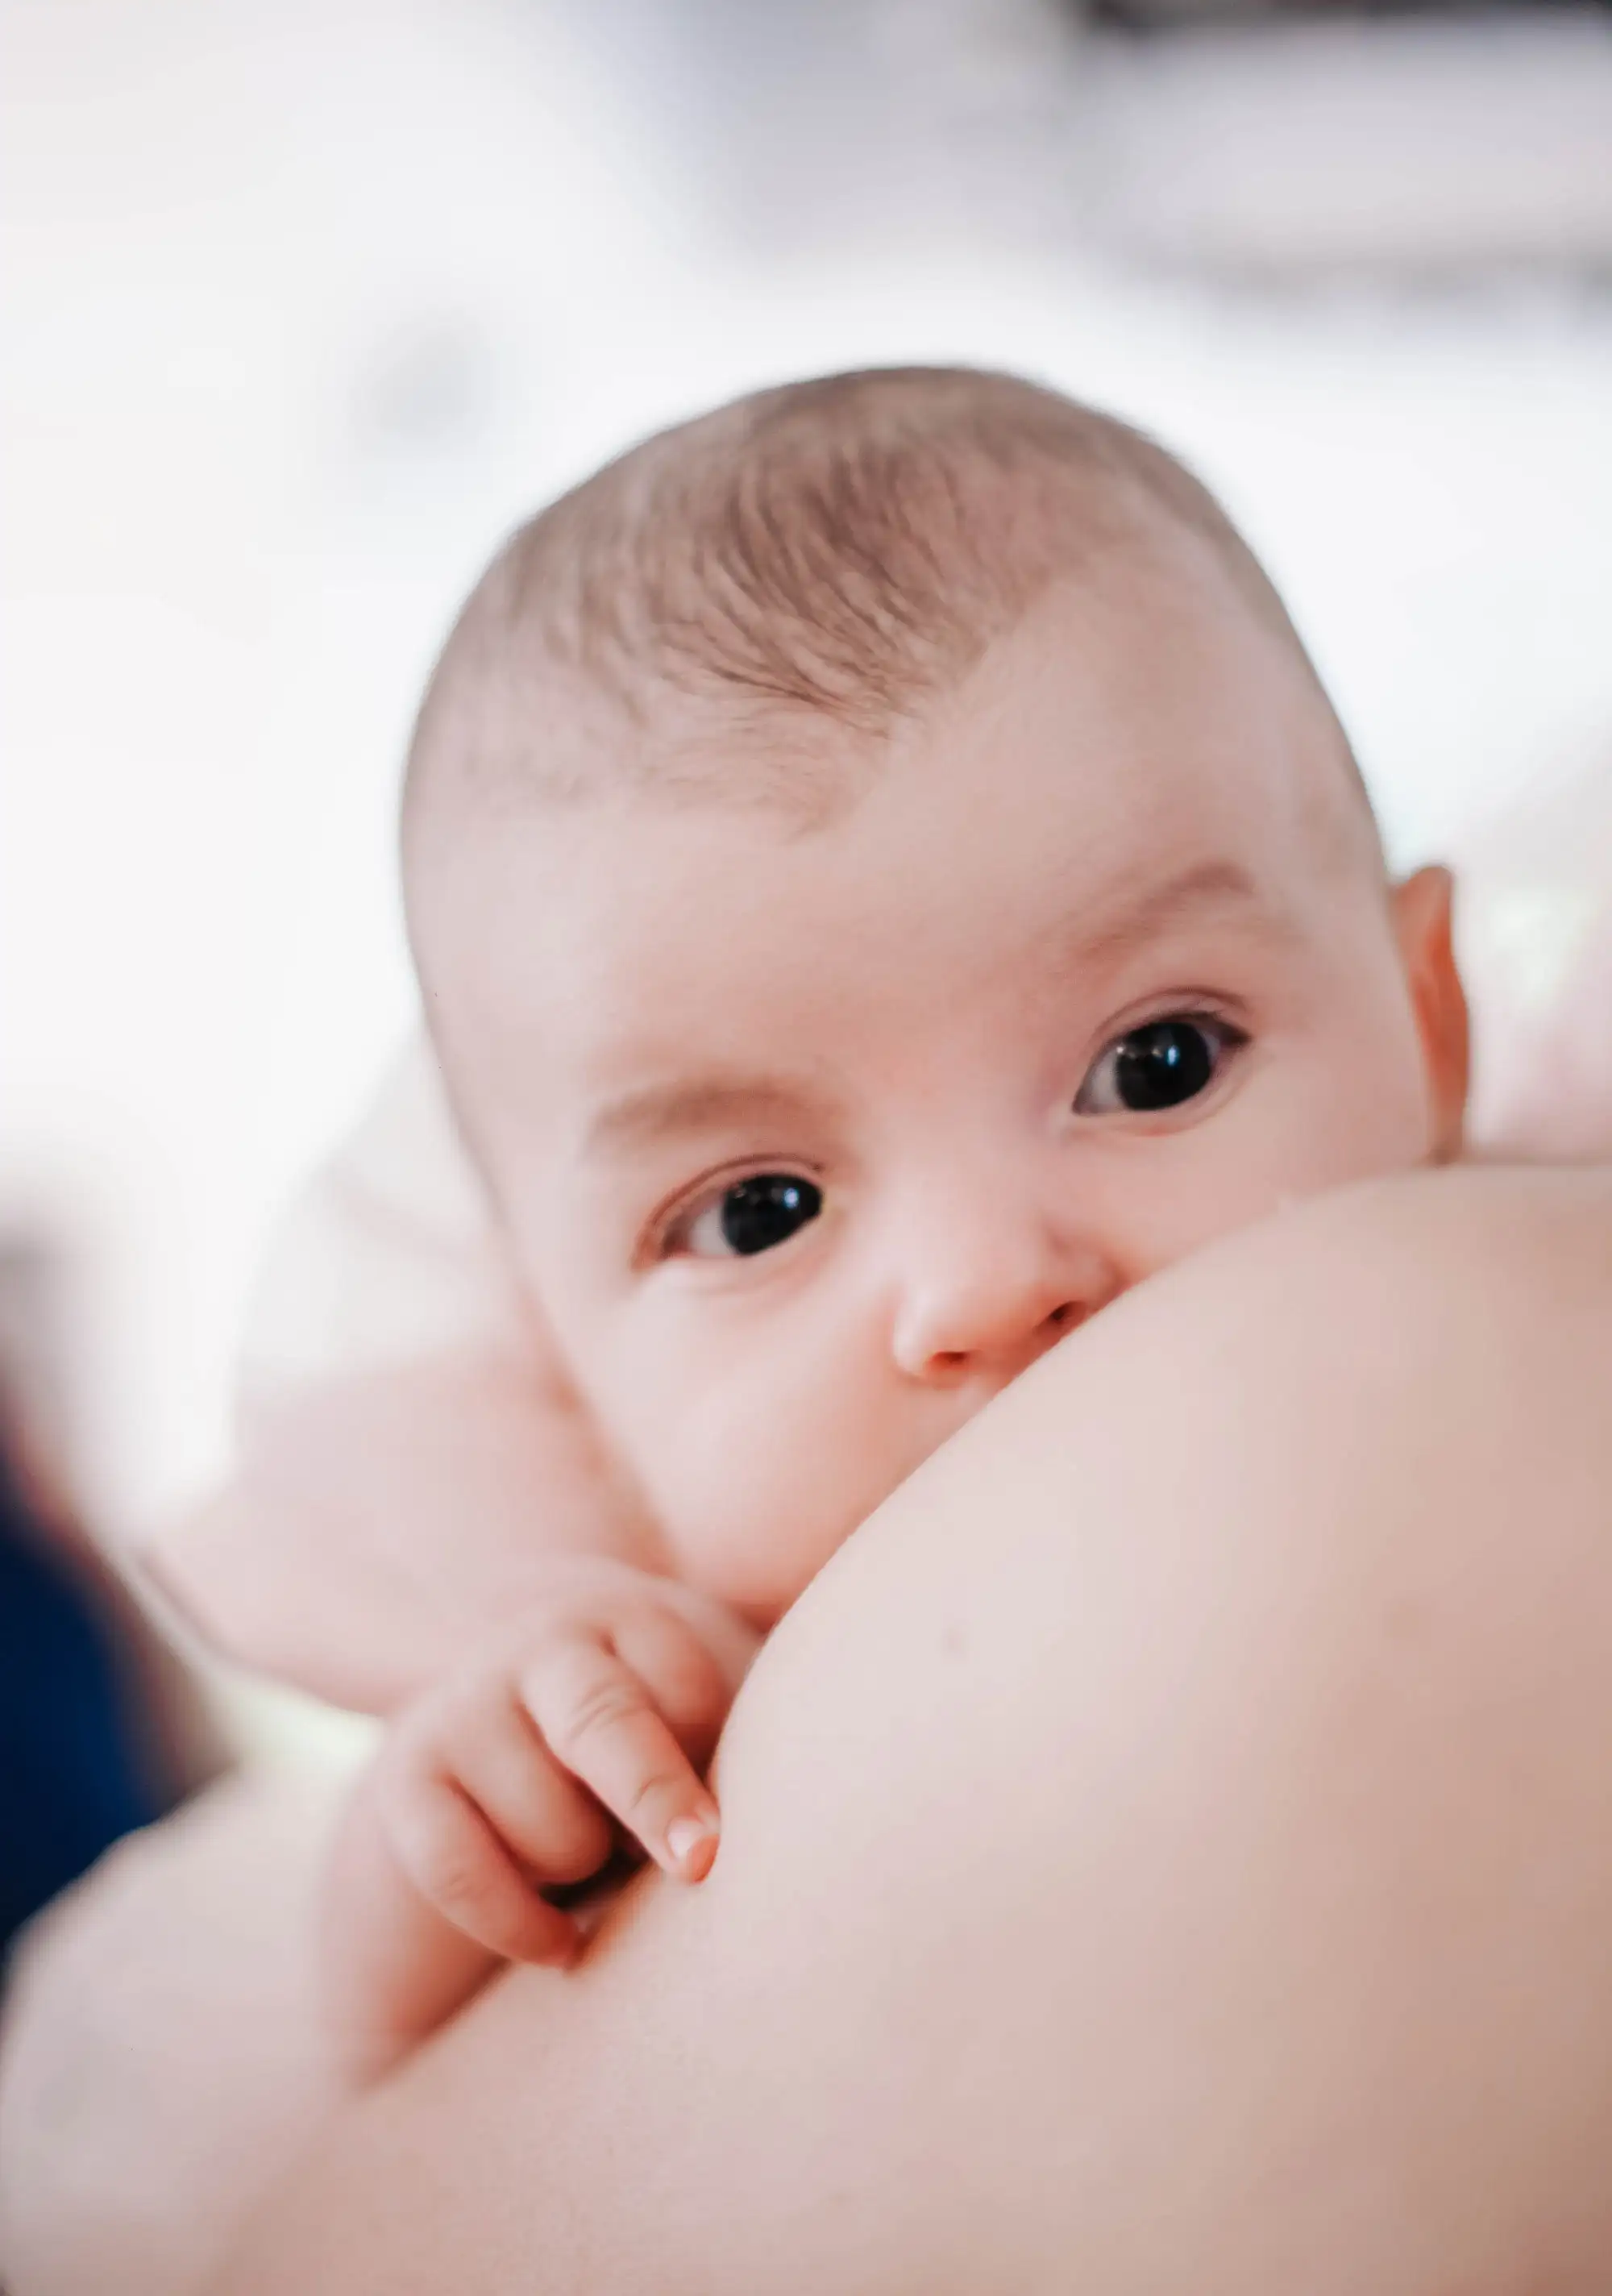 breastfeeding, dangle feeding, breast feeding, milk ducts, unclog milk ducts